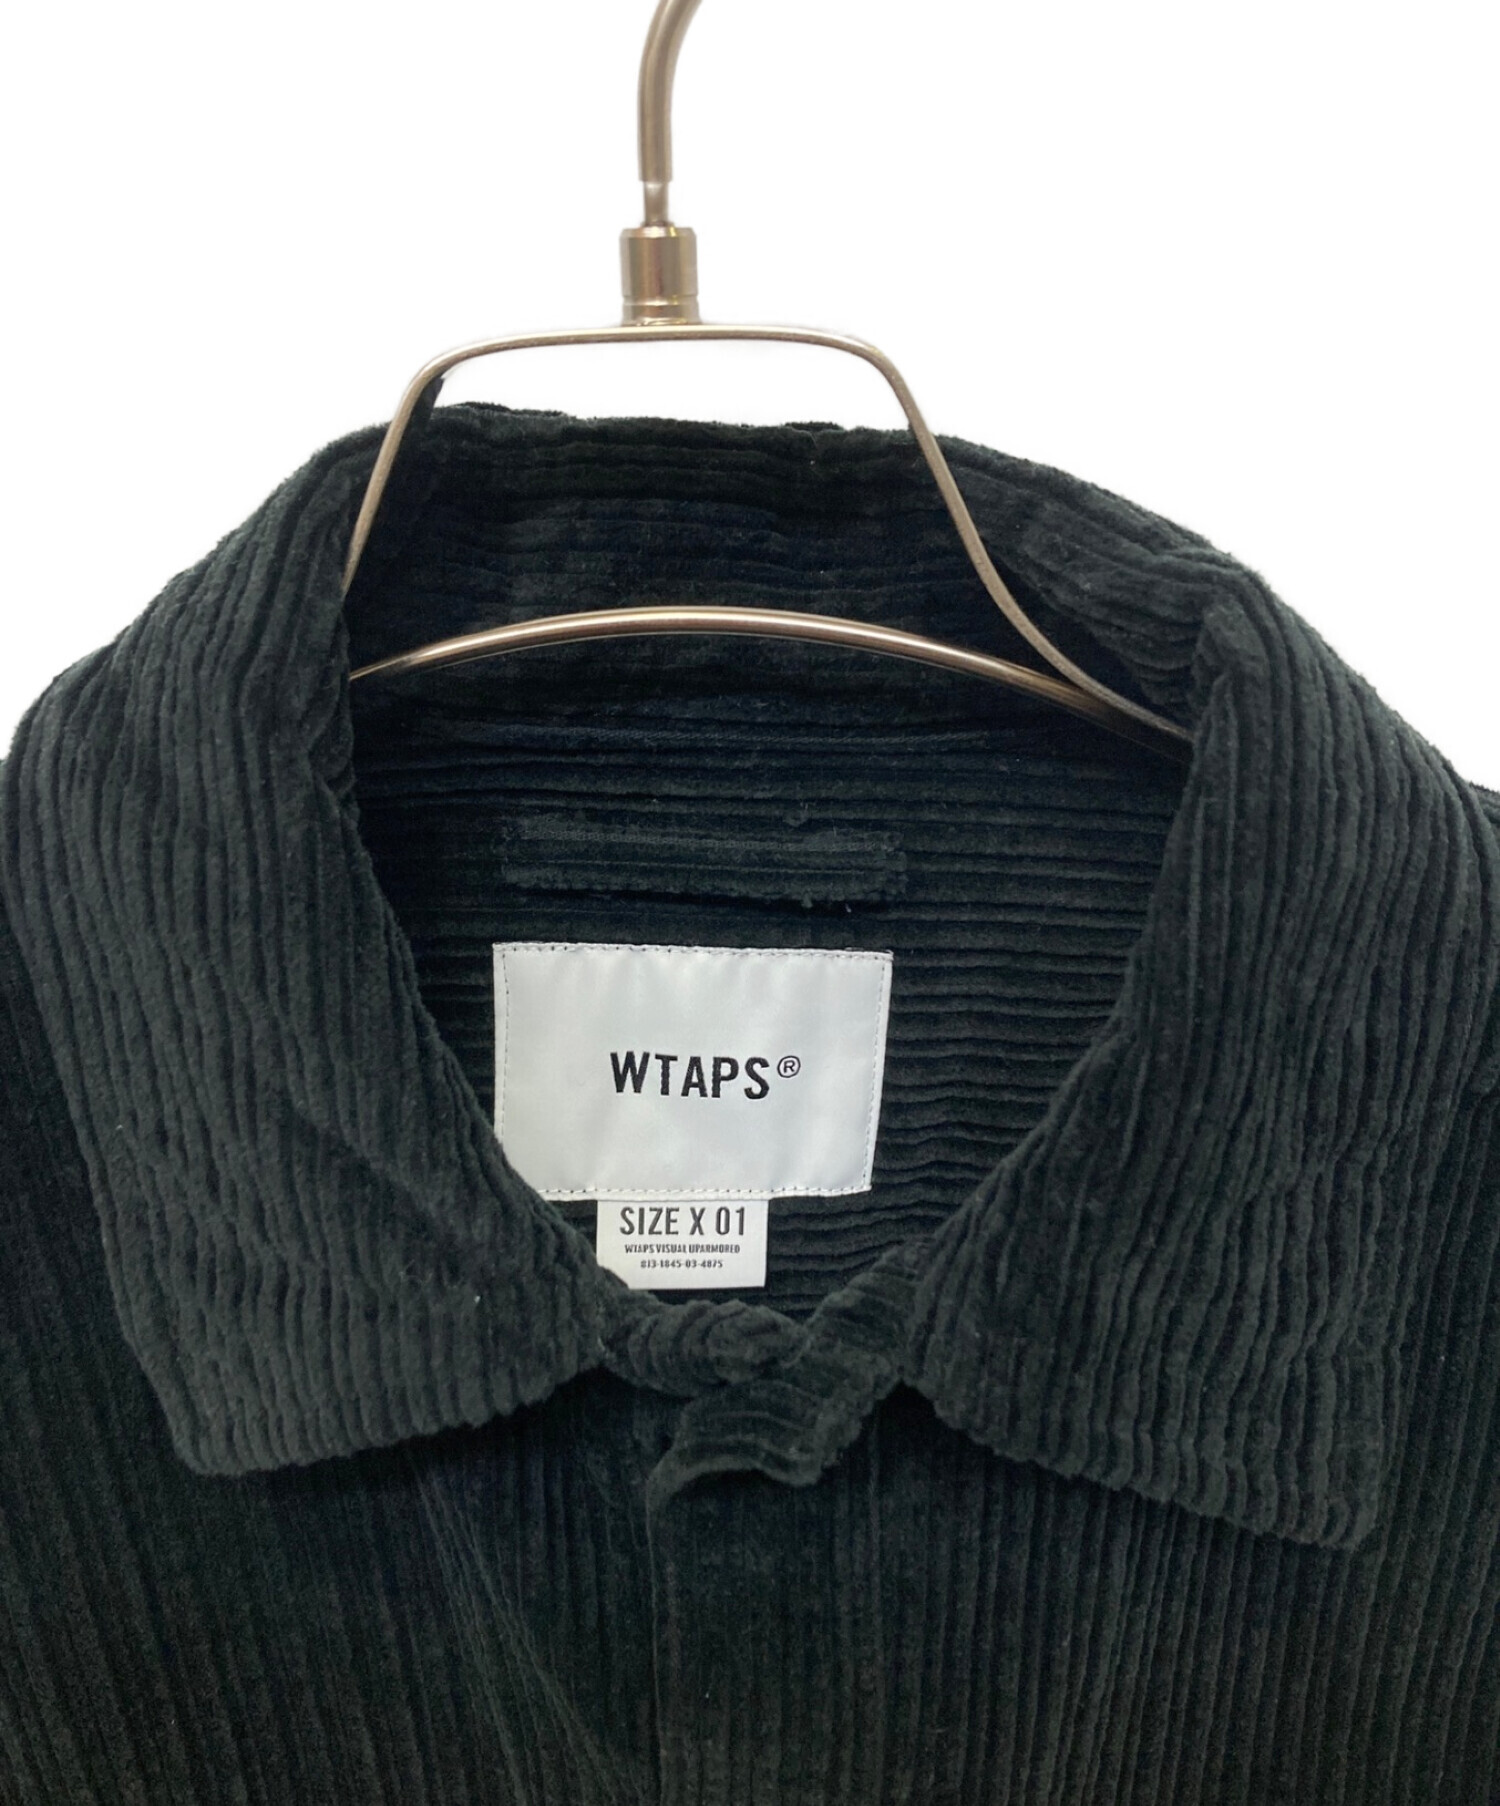 WTAPS 長袖シャツ　サイズX01傷や汚れはありません